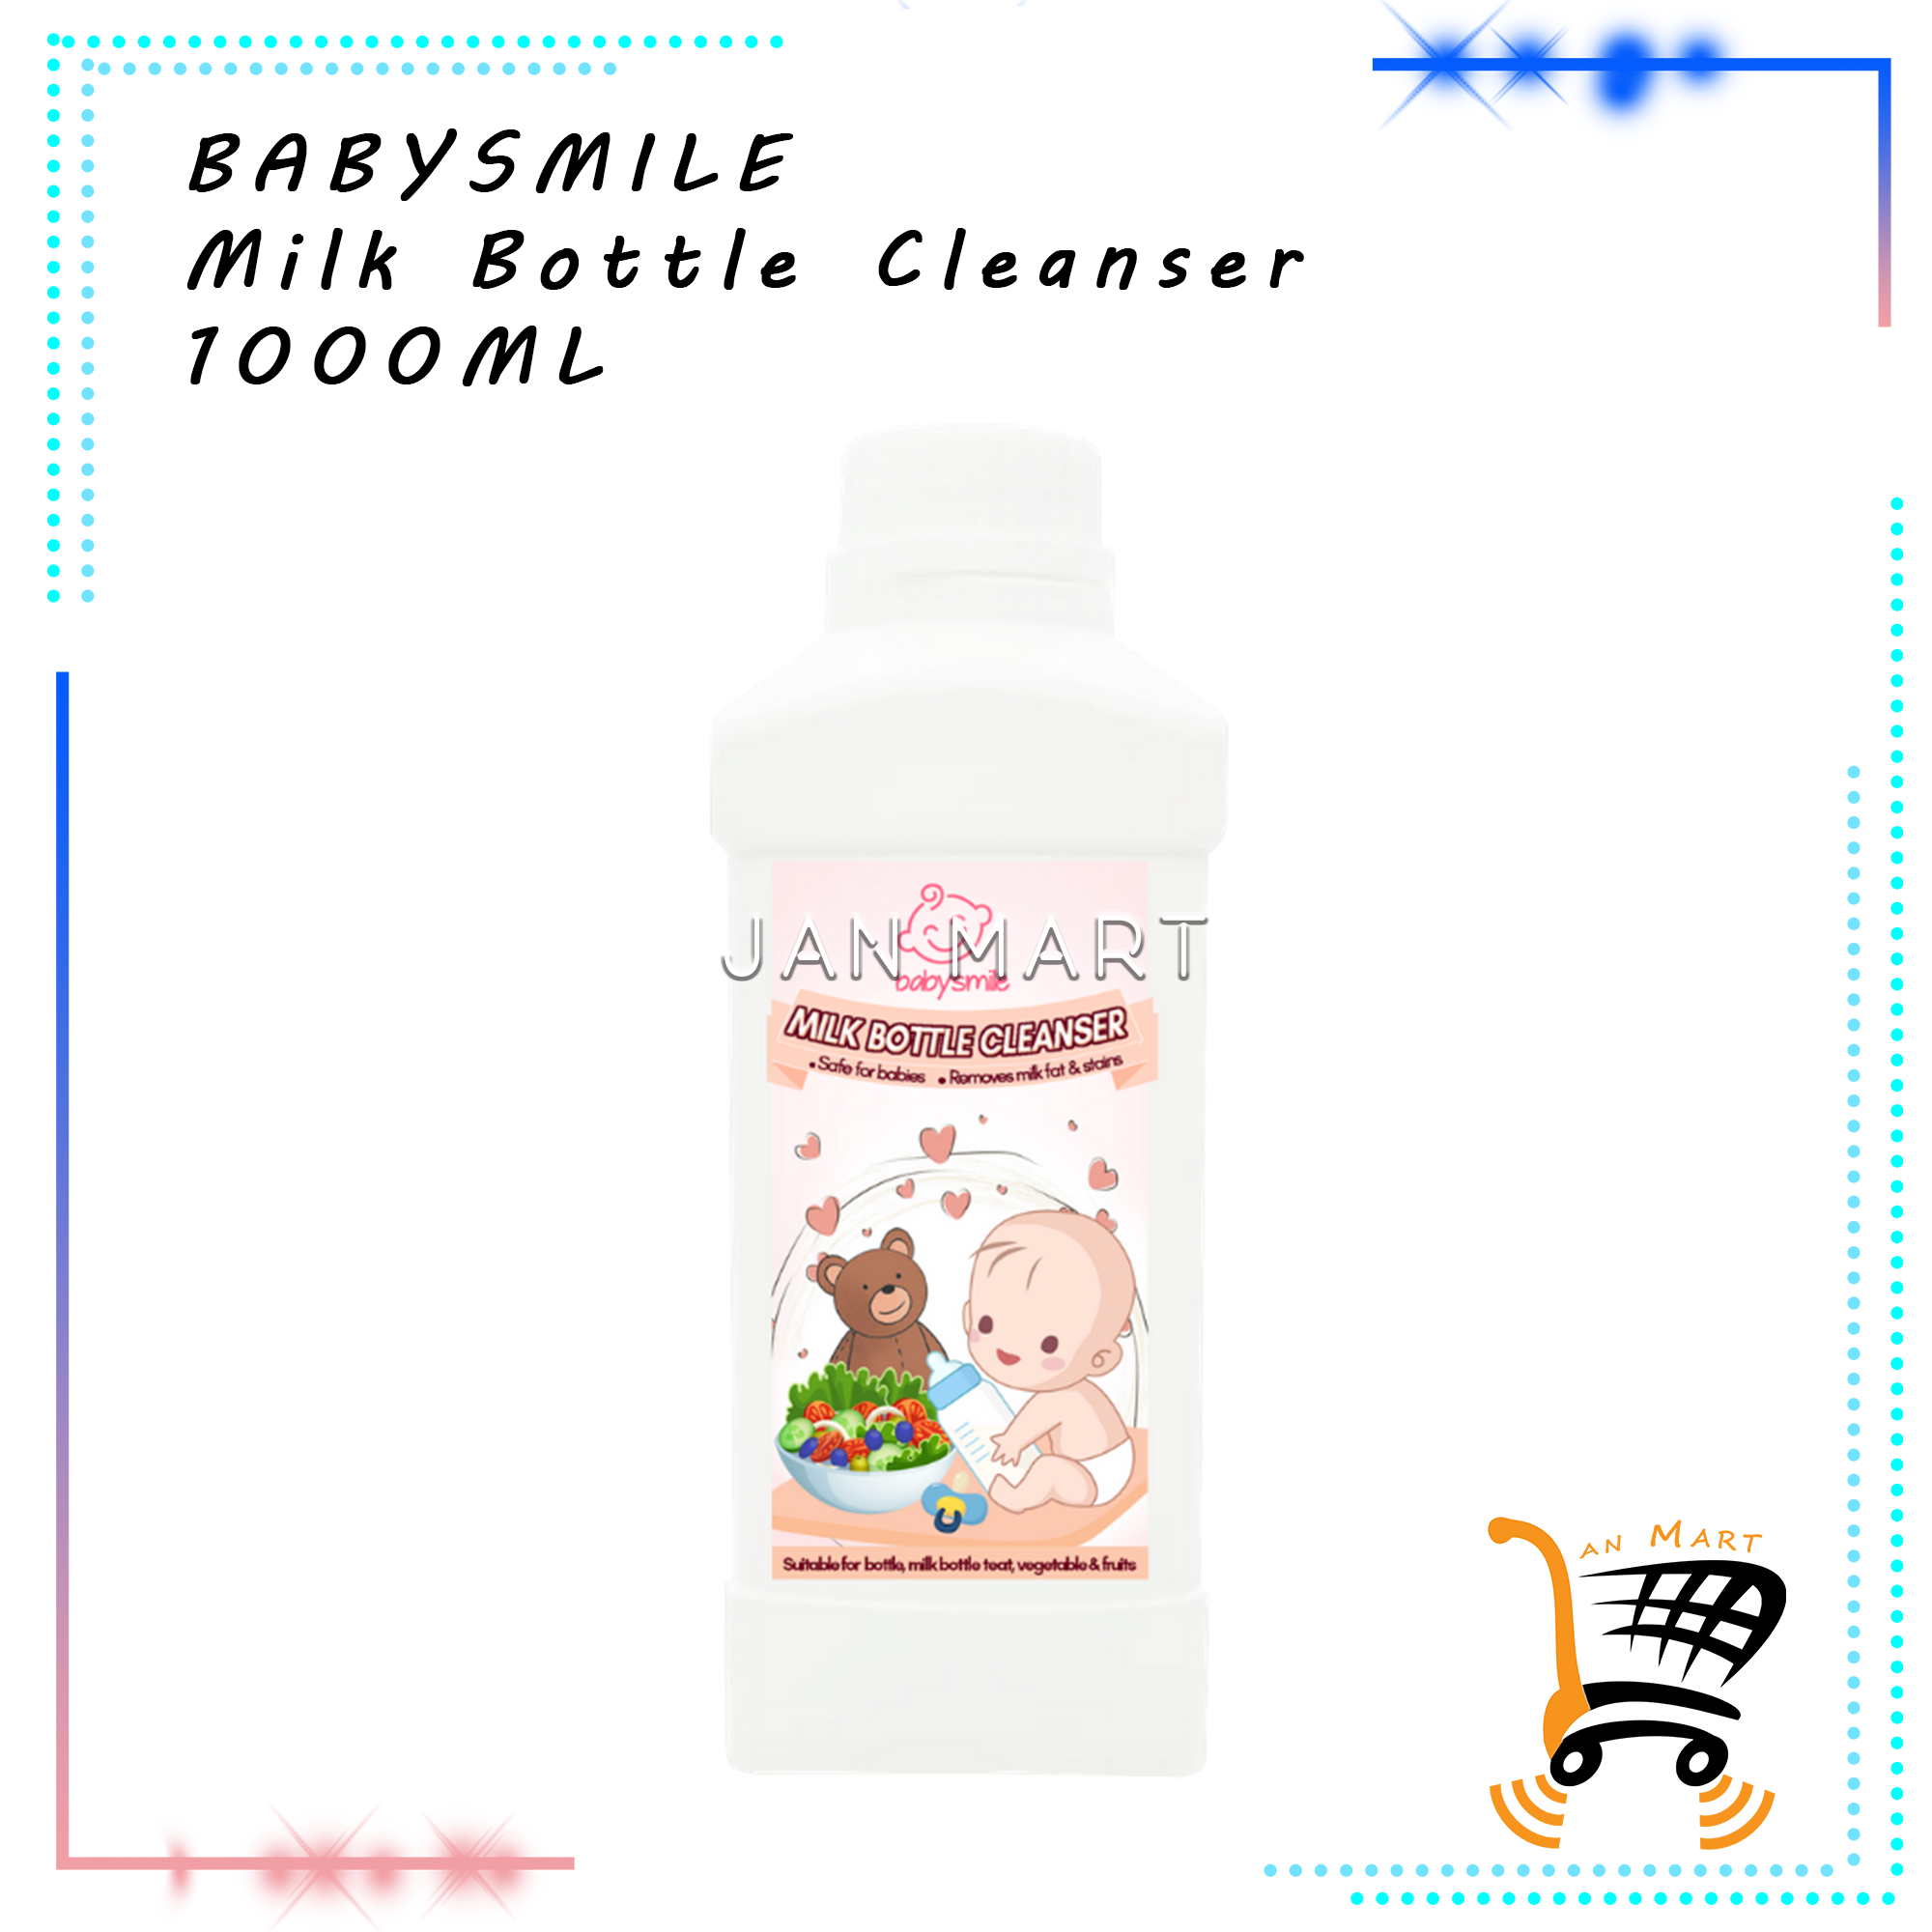 BABYSMILE Milk Bottle Cleanser 1000ML